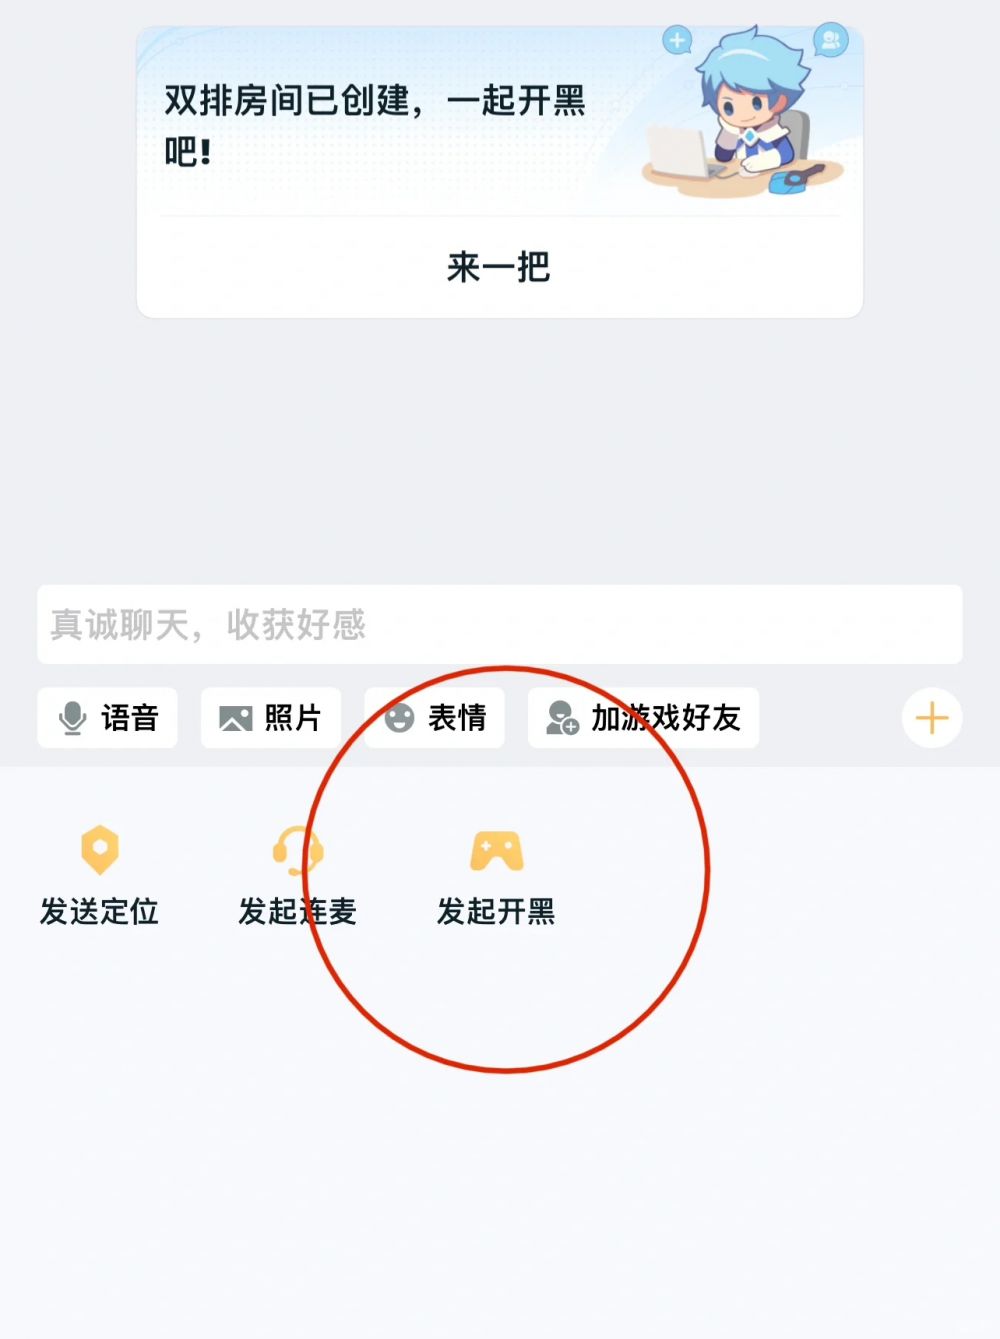 腾讯游戏王者荣耀实现微信QQ双区互通